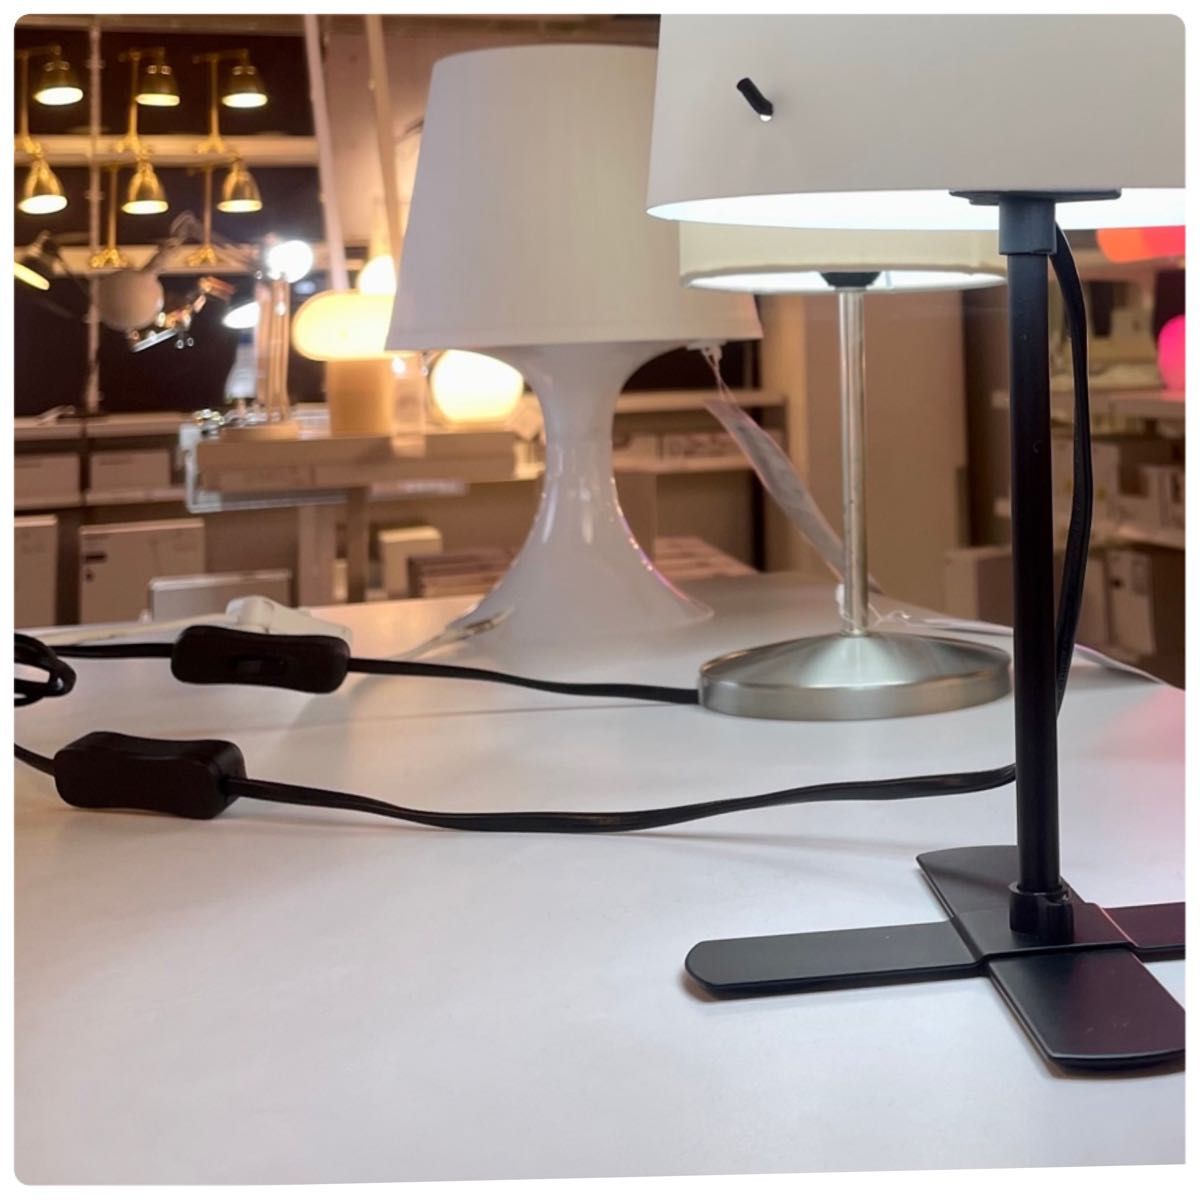 【新品】IKEA イケア バルラスト フロアランプ フロアライト テーブルライト 卓上ライト 31cm 電球付きプランあります♪